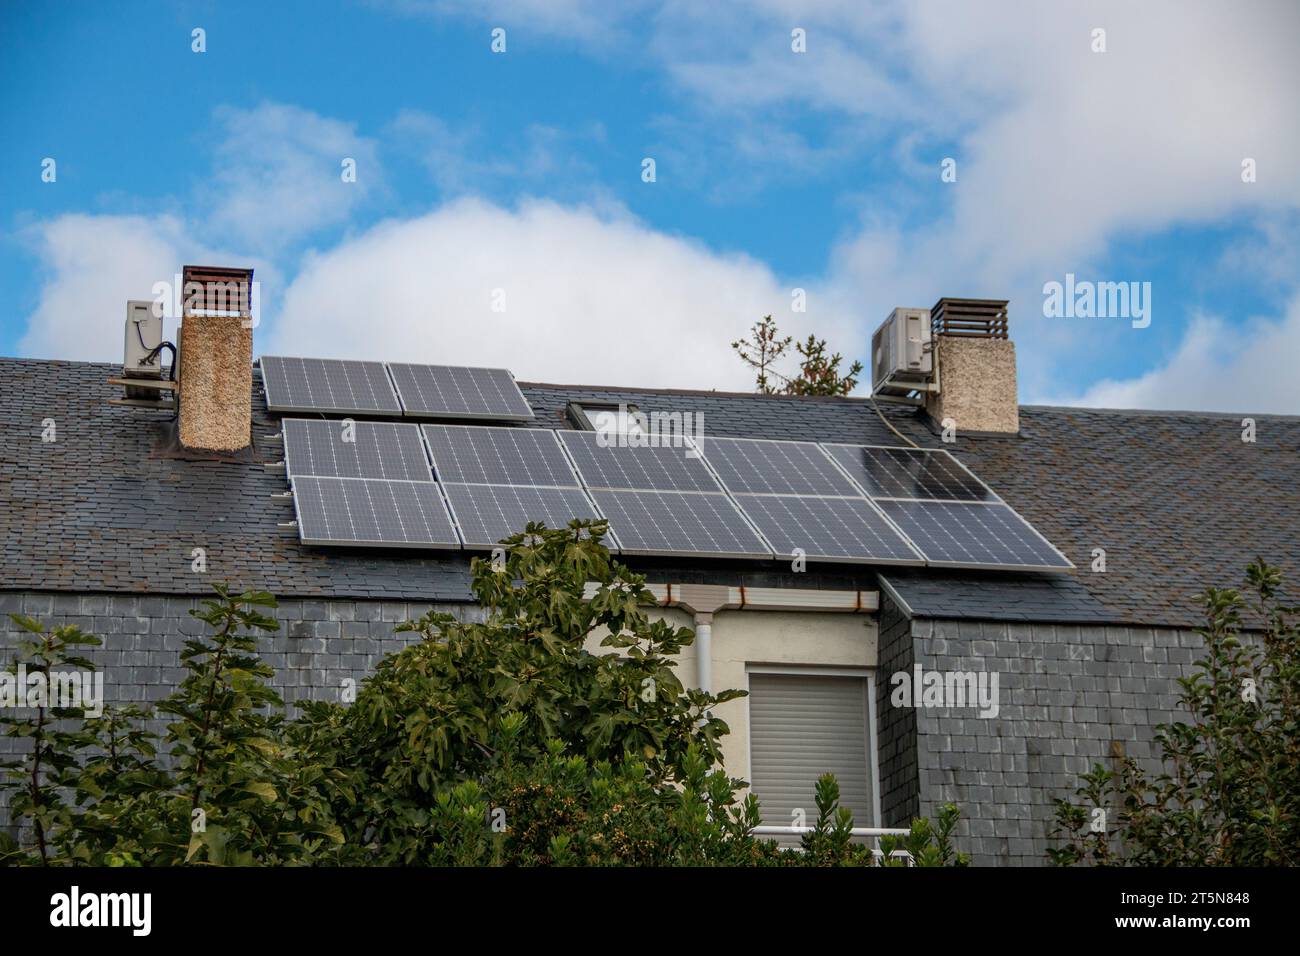 Pannelli solari fotovoltaici installati su un tetto in ardesia Foto Stock